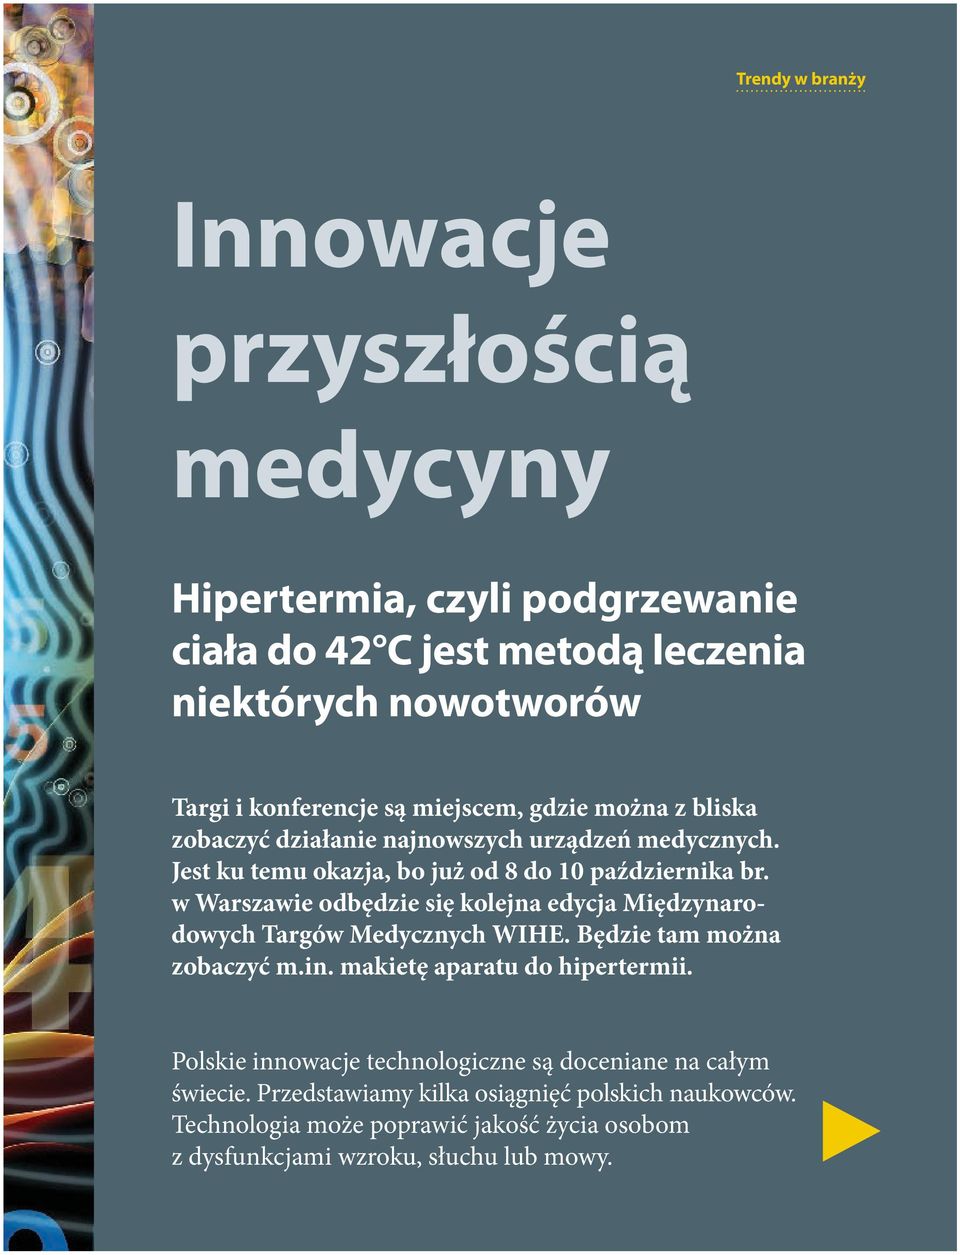 w Warszawie odbędzie się kolejna edycja Międzynarodowych Targów Medycznych WIHE. Będzie tam można zobaczyć m.in. makietę aparatu do hipertermii.